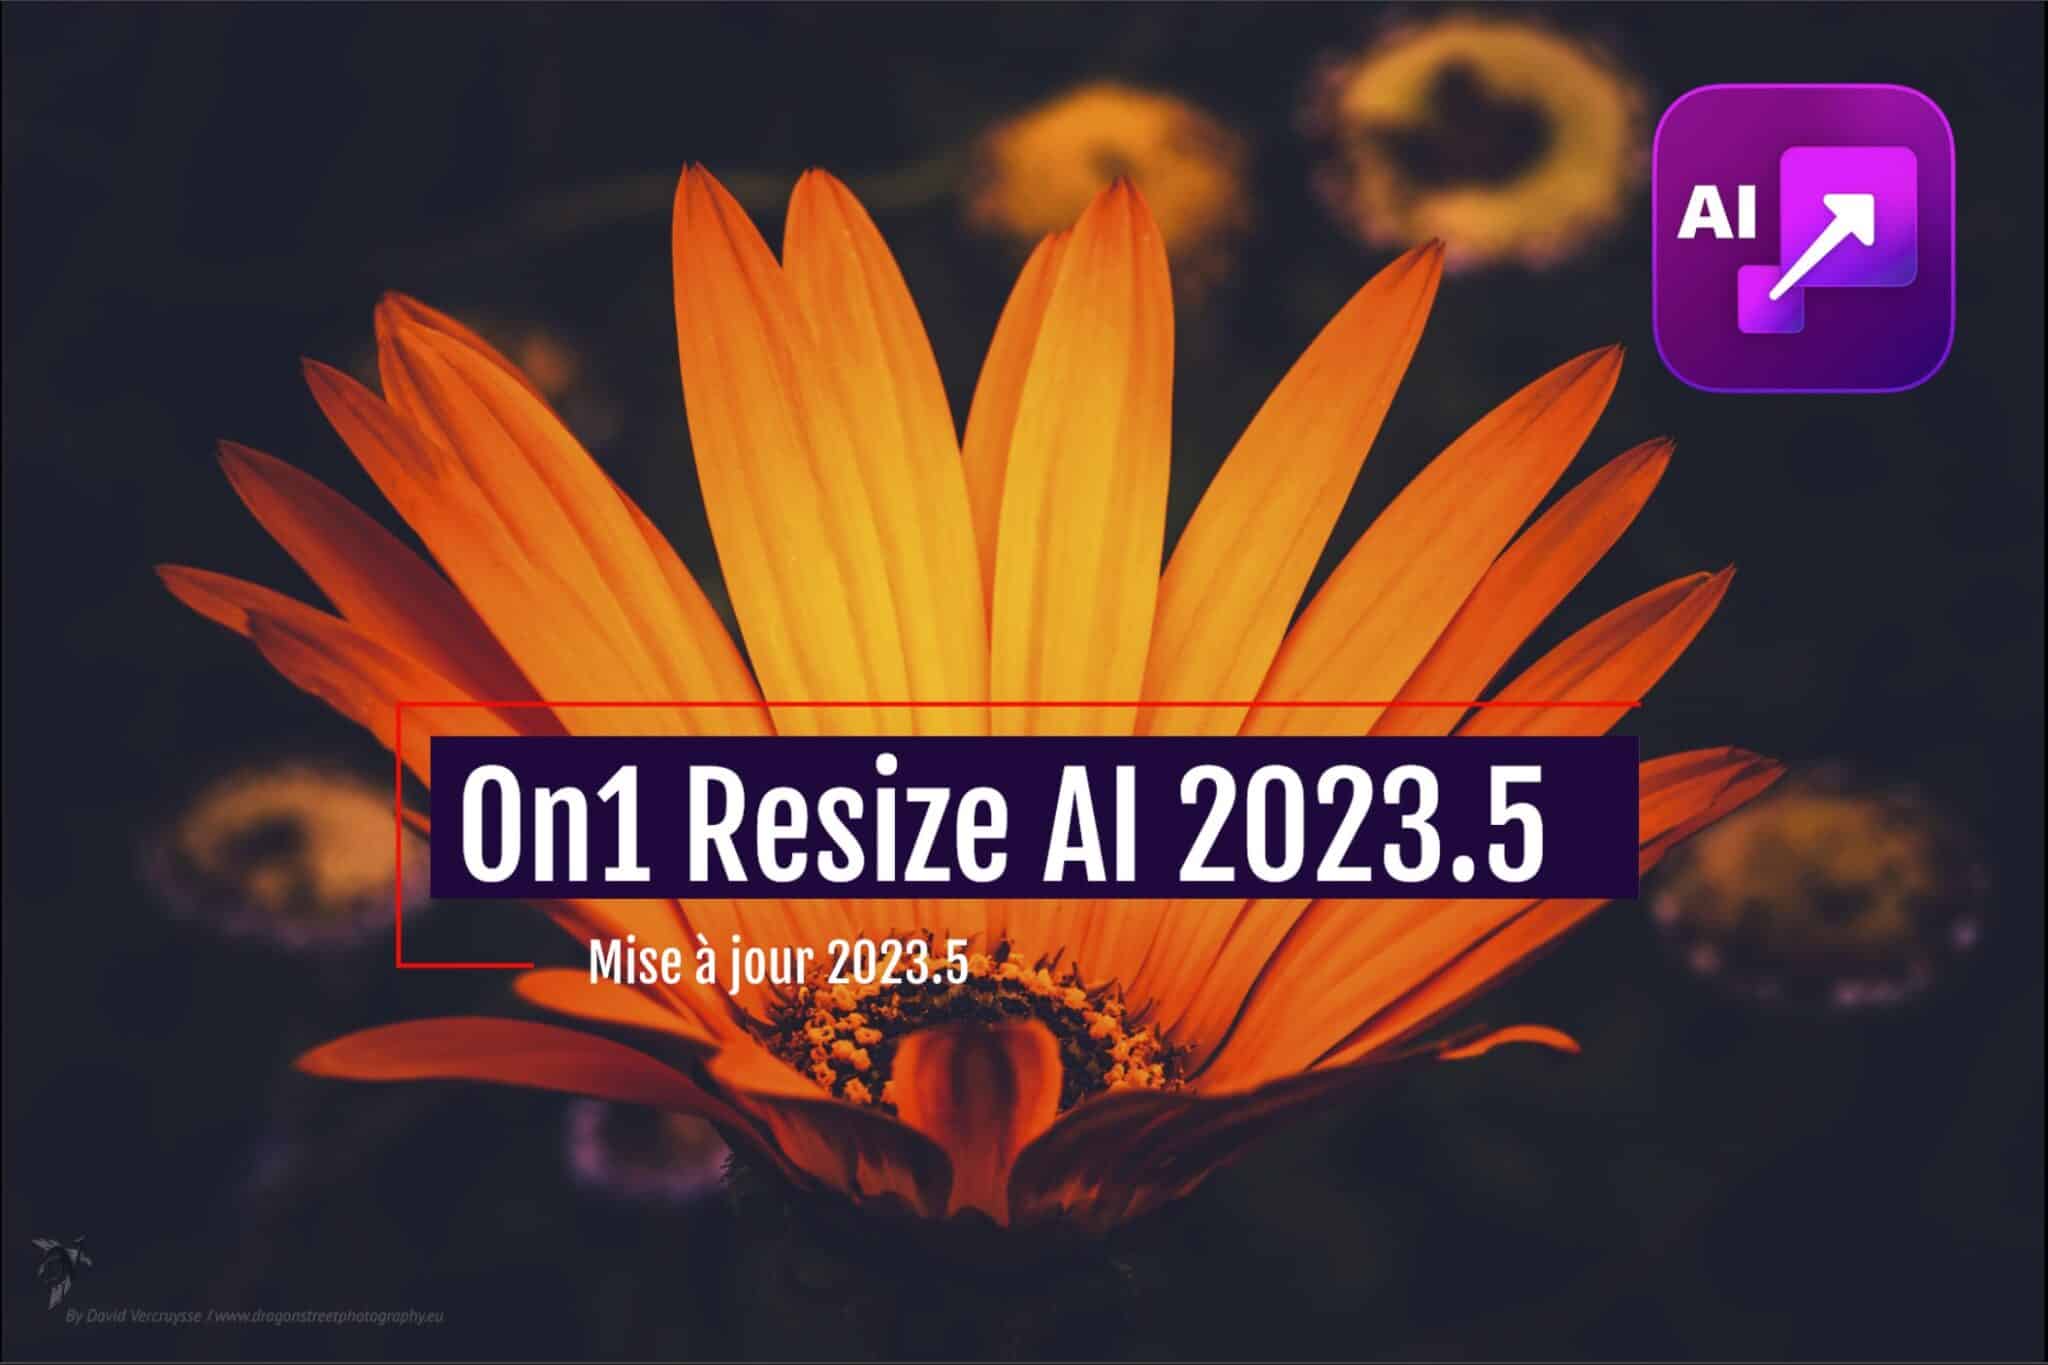 On1 Resize AI 2023.5